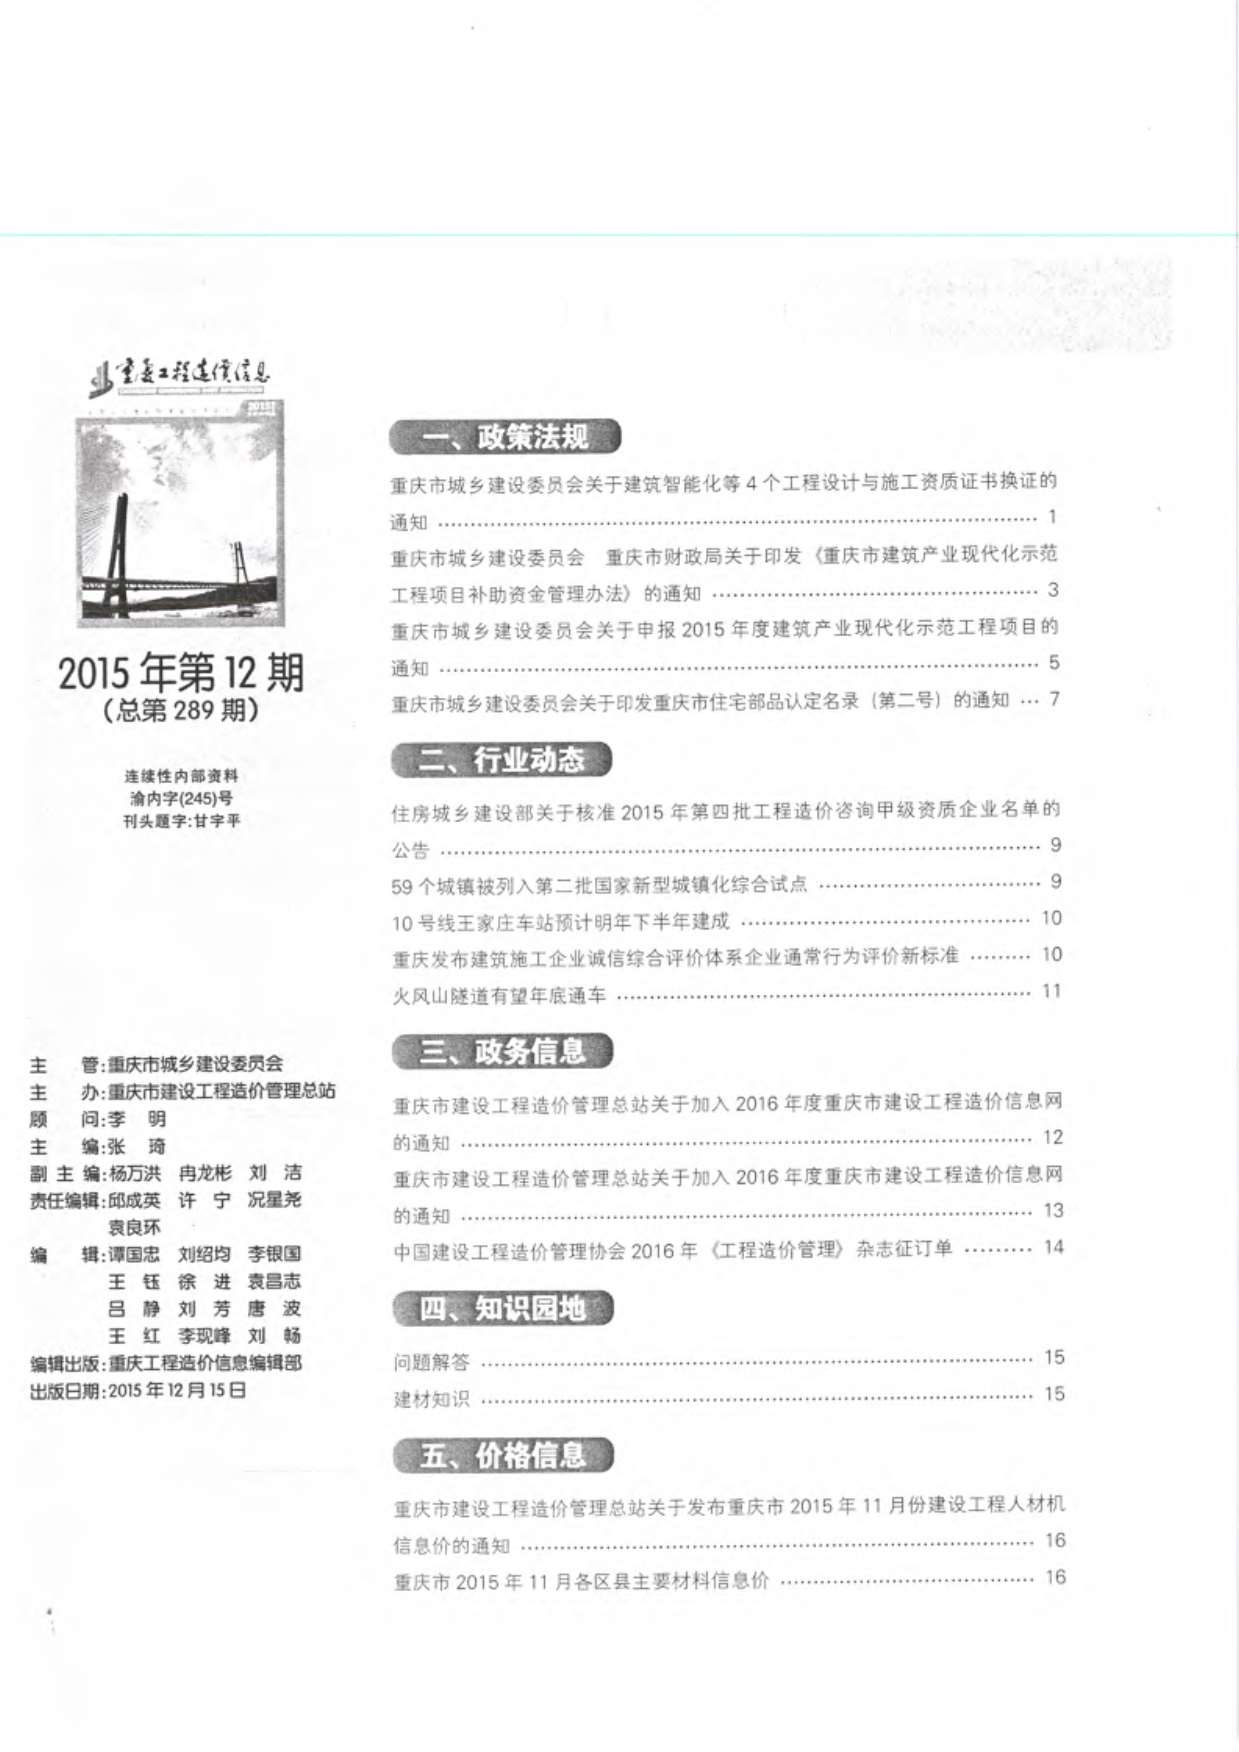 重庆市2015年12月工程信息价_重庆市信息价期刊PDF扫描件电子版